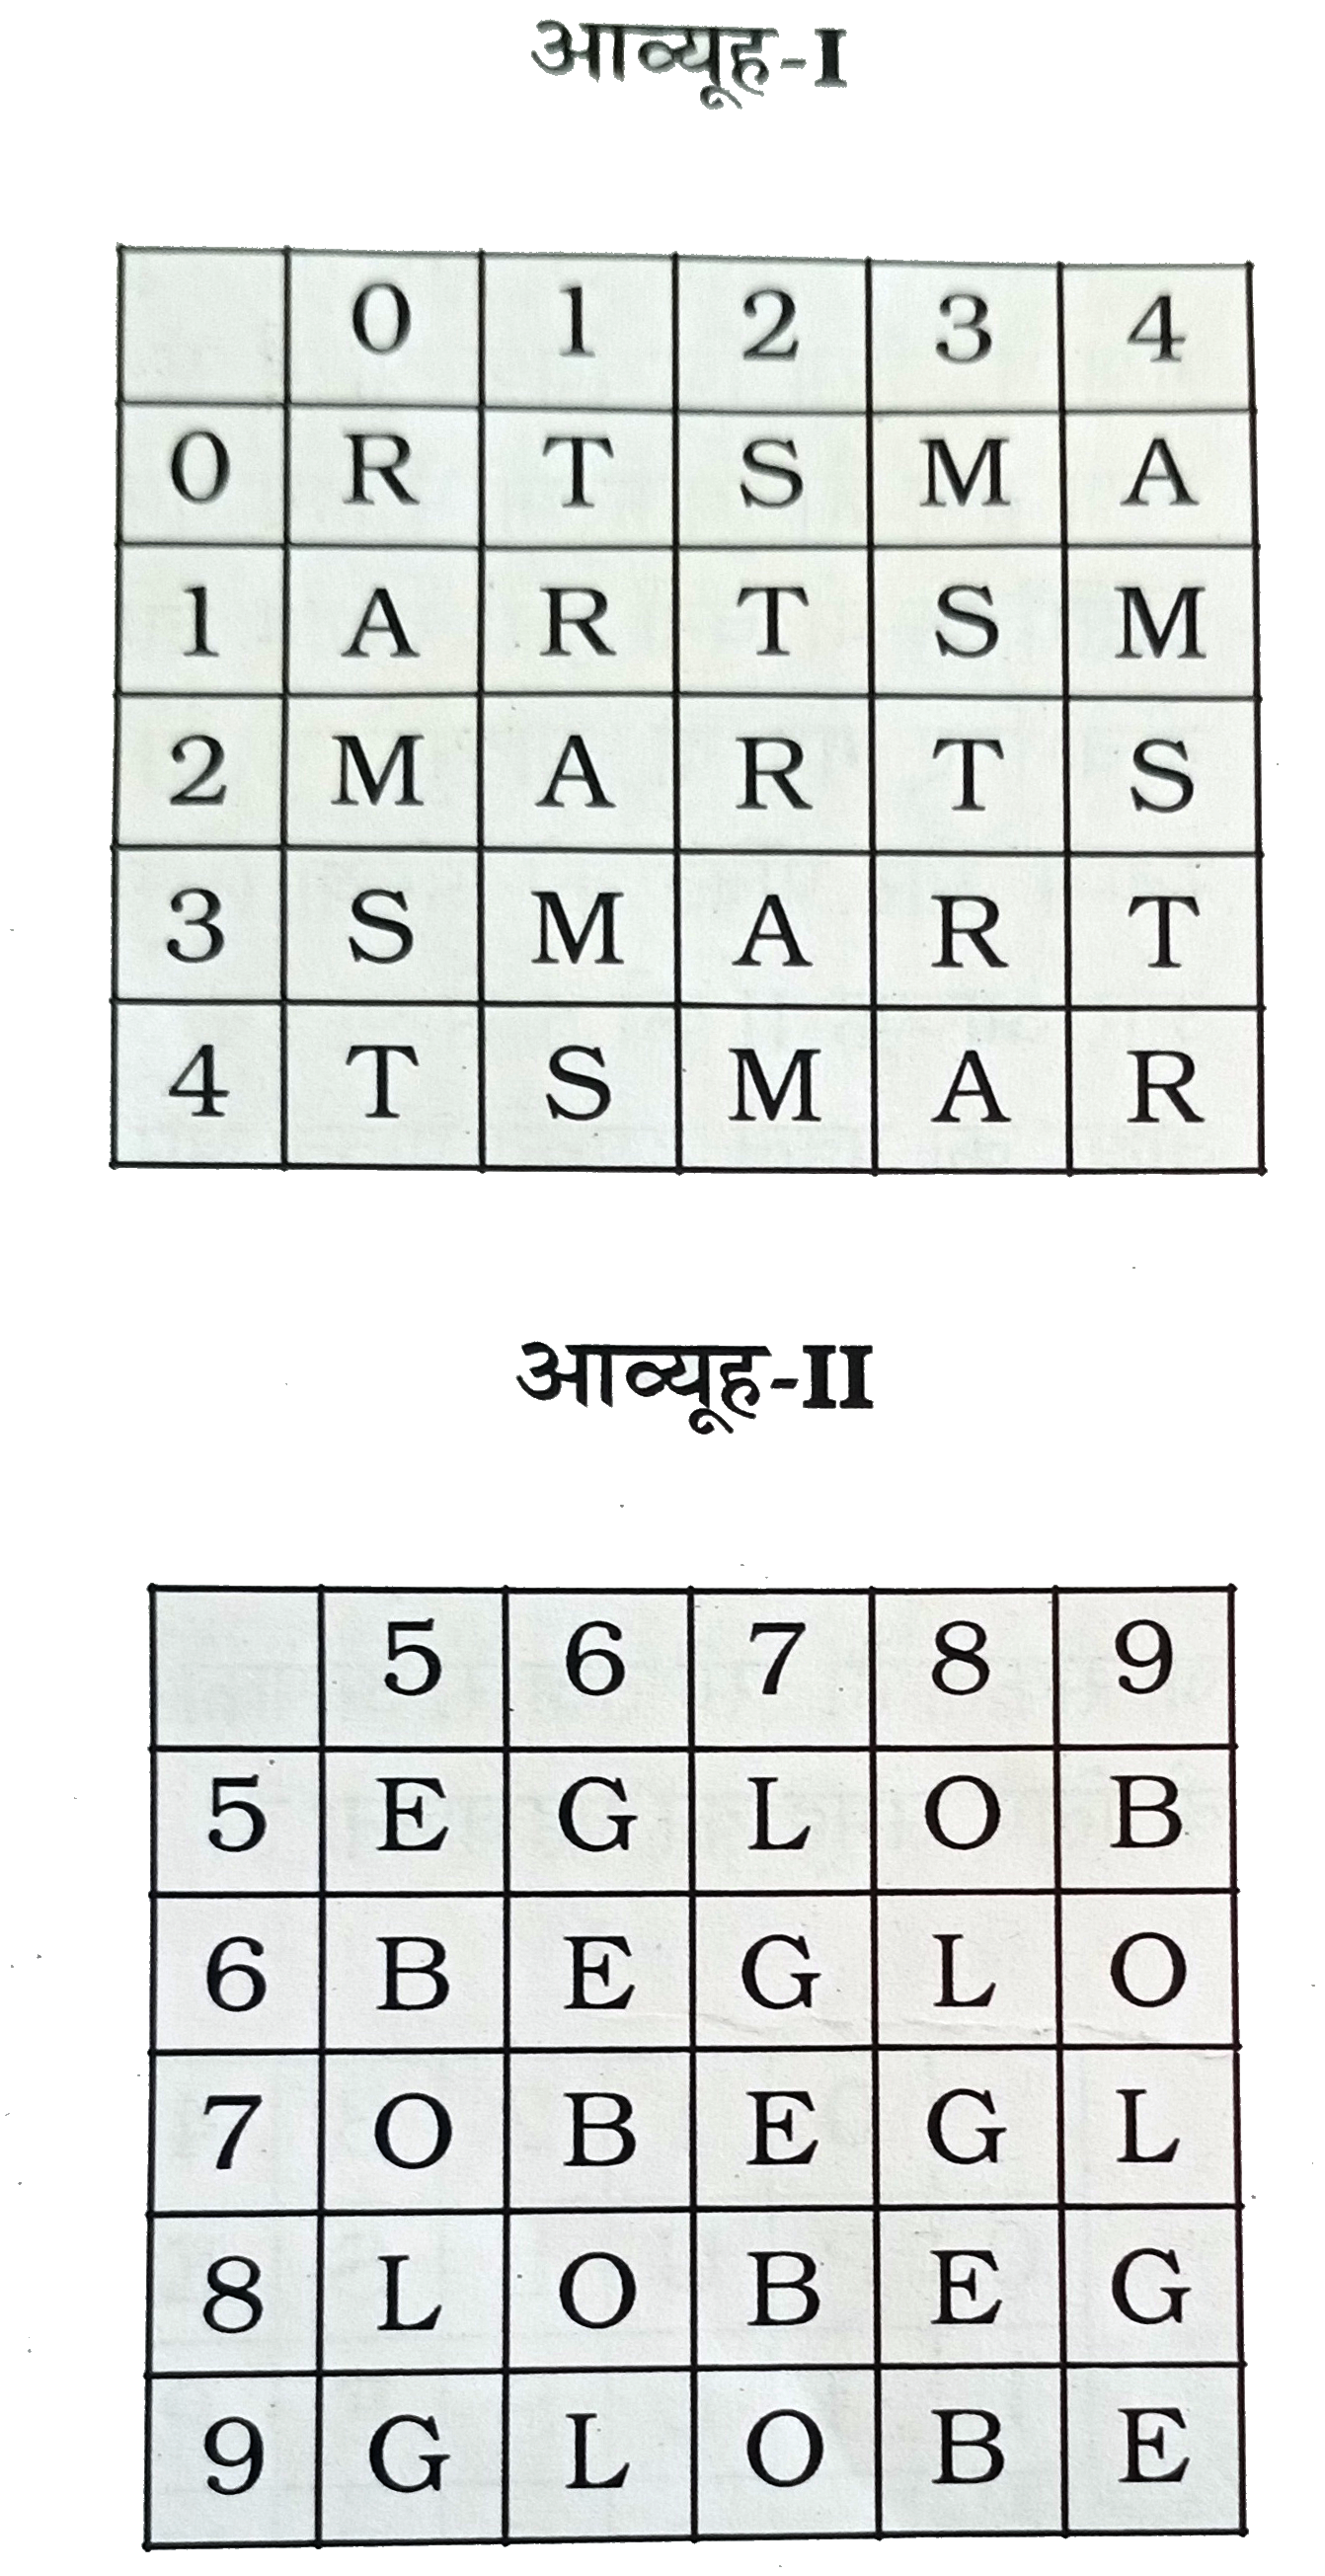 एक शब्द केवल एक संख्या-समूह द्वारा दर्शाया गया है, जैसा कि विकल्पों में से किसी एक में दिया गया है । विकल्पों में दिए गए संख्या-समूह अक्षरों के दो वर्गो द्वारा दर्शाए गए है, जैसा कि नीचे दिए गए दो आव्यूहों में है। आव्यूह -I के स्तम्भ और पंक्ति की संख्या 0 से 4 दी गई है और आव्यूह-II की 5 से 9 । इन आव्यूहों से एक अक्षर को पहले उसकी पंक्ति और बाद में स्तम्भ संख्या द्वारा दर्शाया जा सकता है । उदाहरण के लिए, A को 04,10, आदि द्वारा दर्शाया जा सकता है तथा B को 59,65, आदि द्वारा दर्शाया जा सकता है । इसी तरह से, आपको शब्द MARBLE के लिए समूह पहचानना है ।